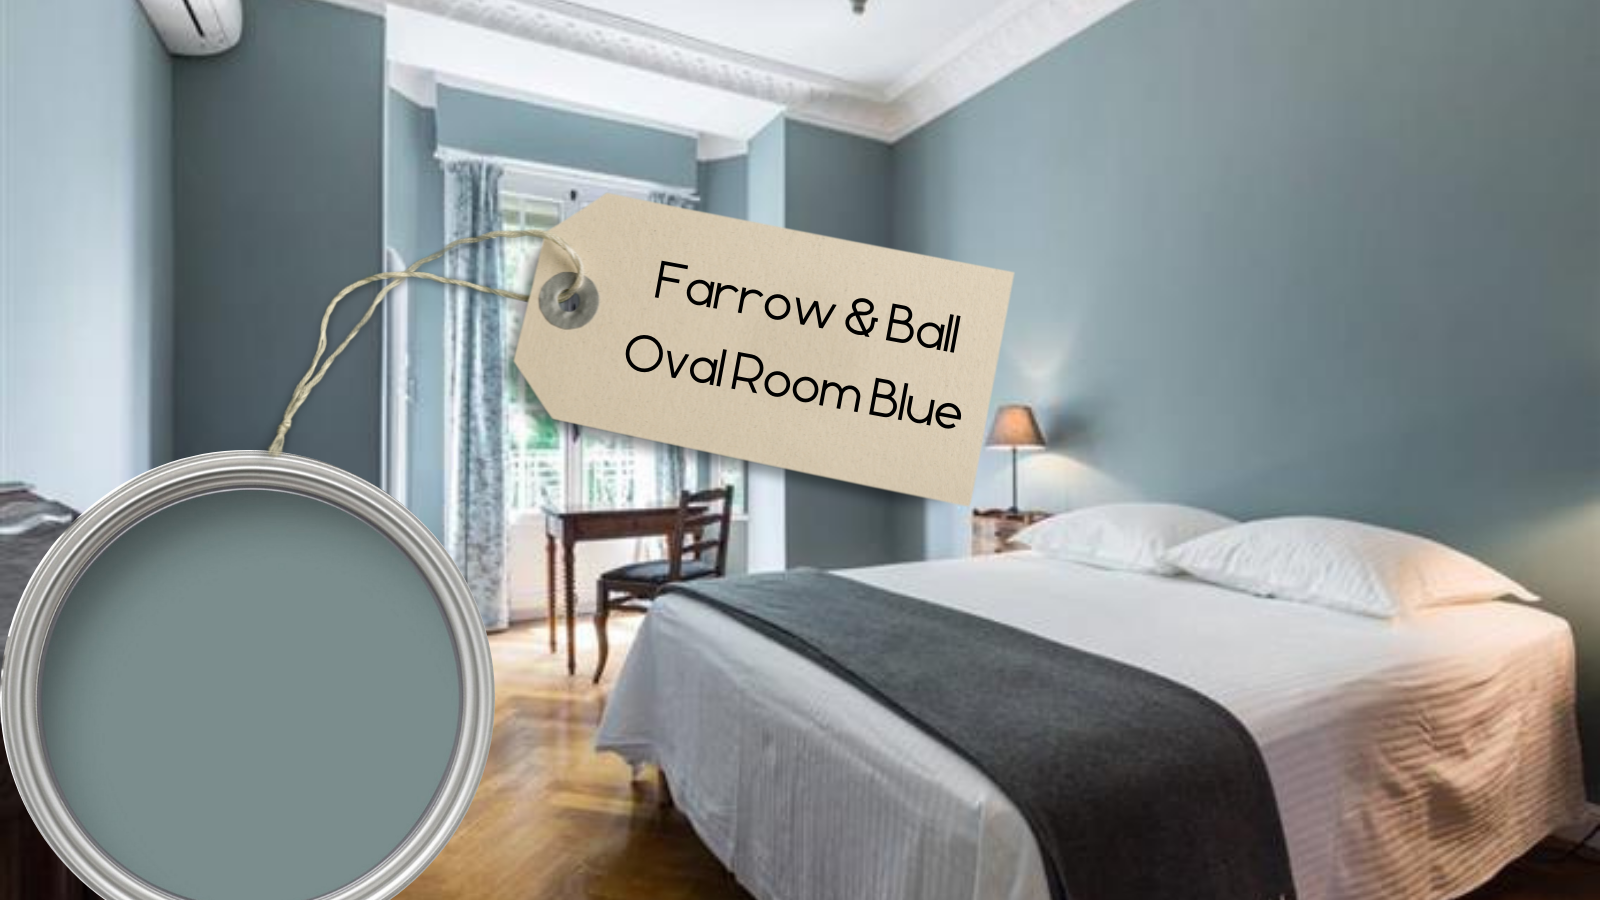 Farrow and Ball Oval Room Blue